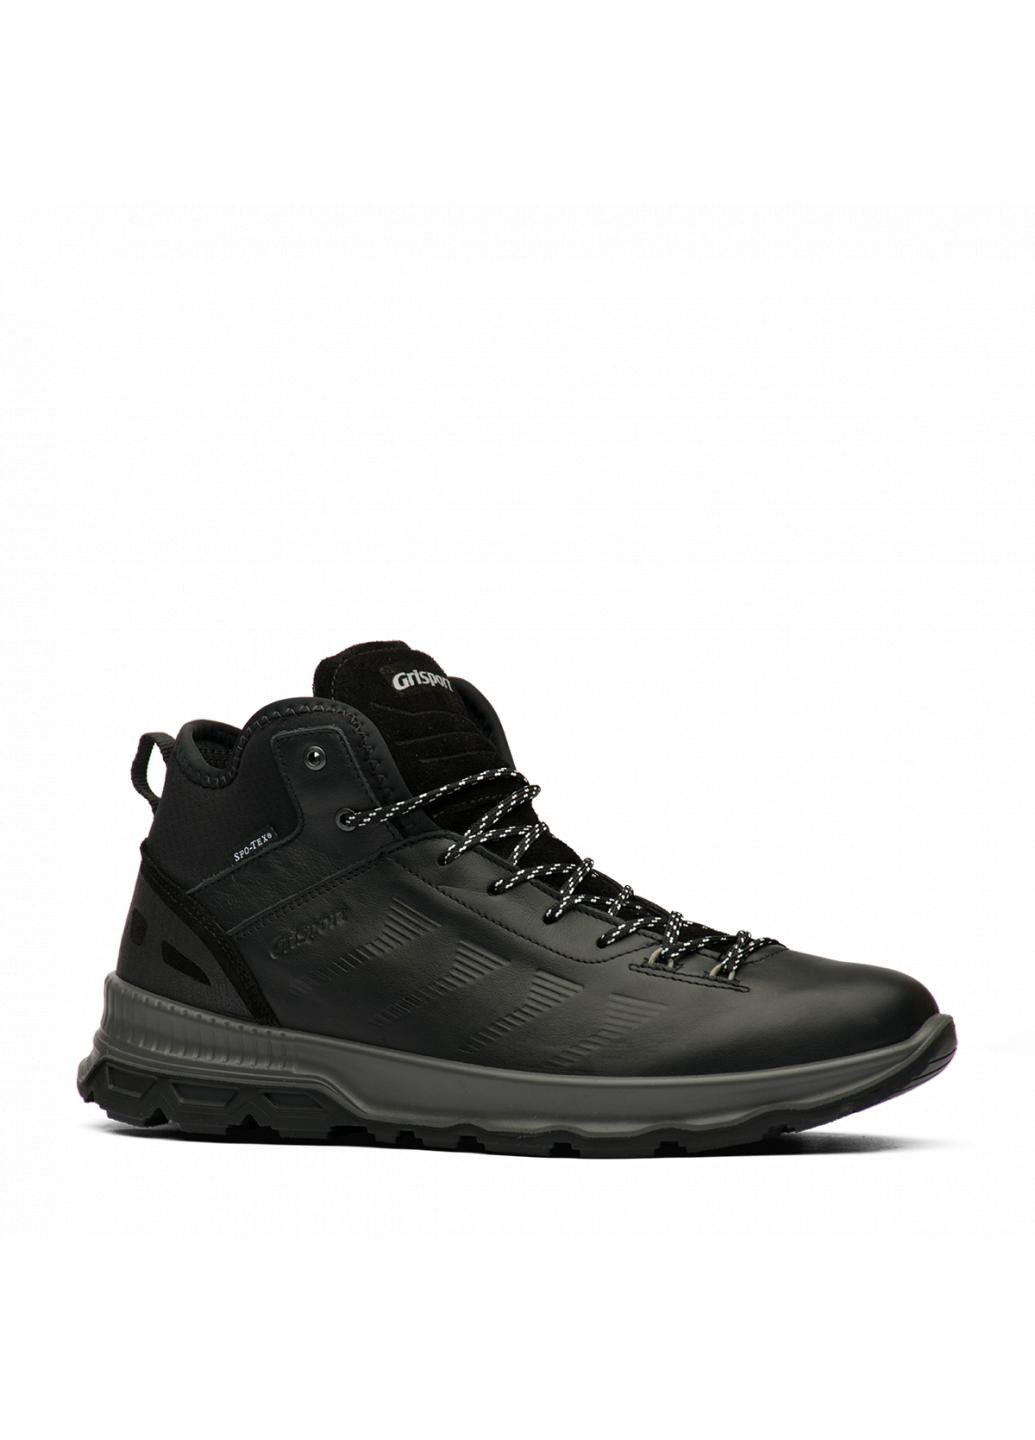 Черные зимние ботинки 14833-a42 Grisport